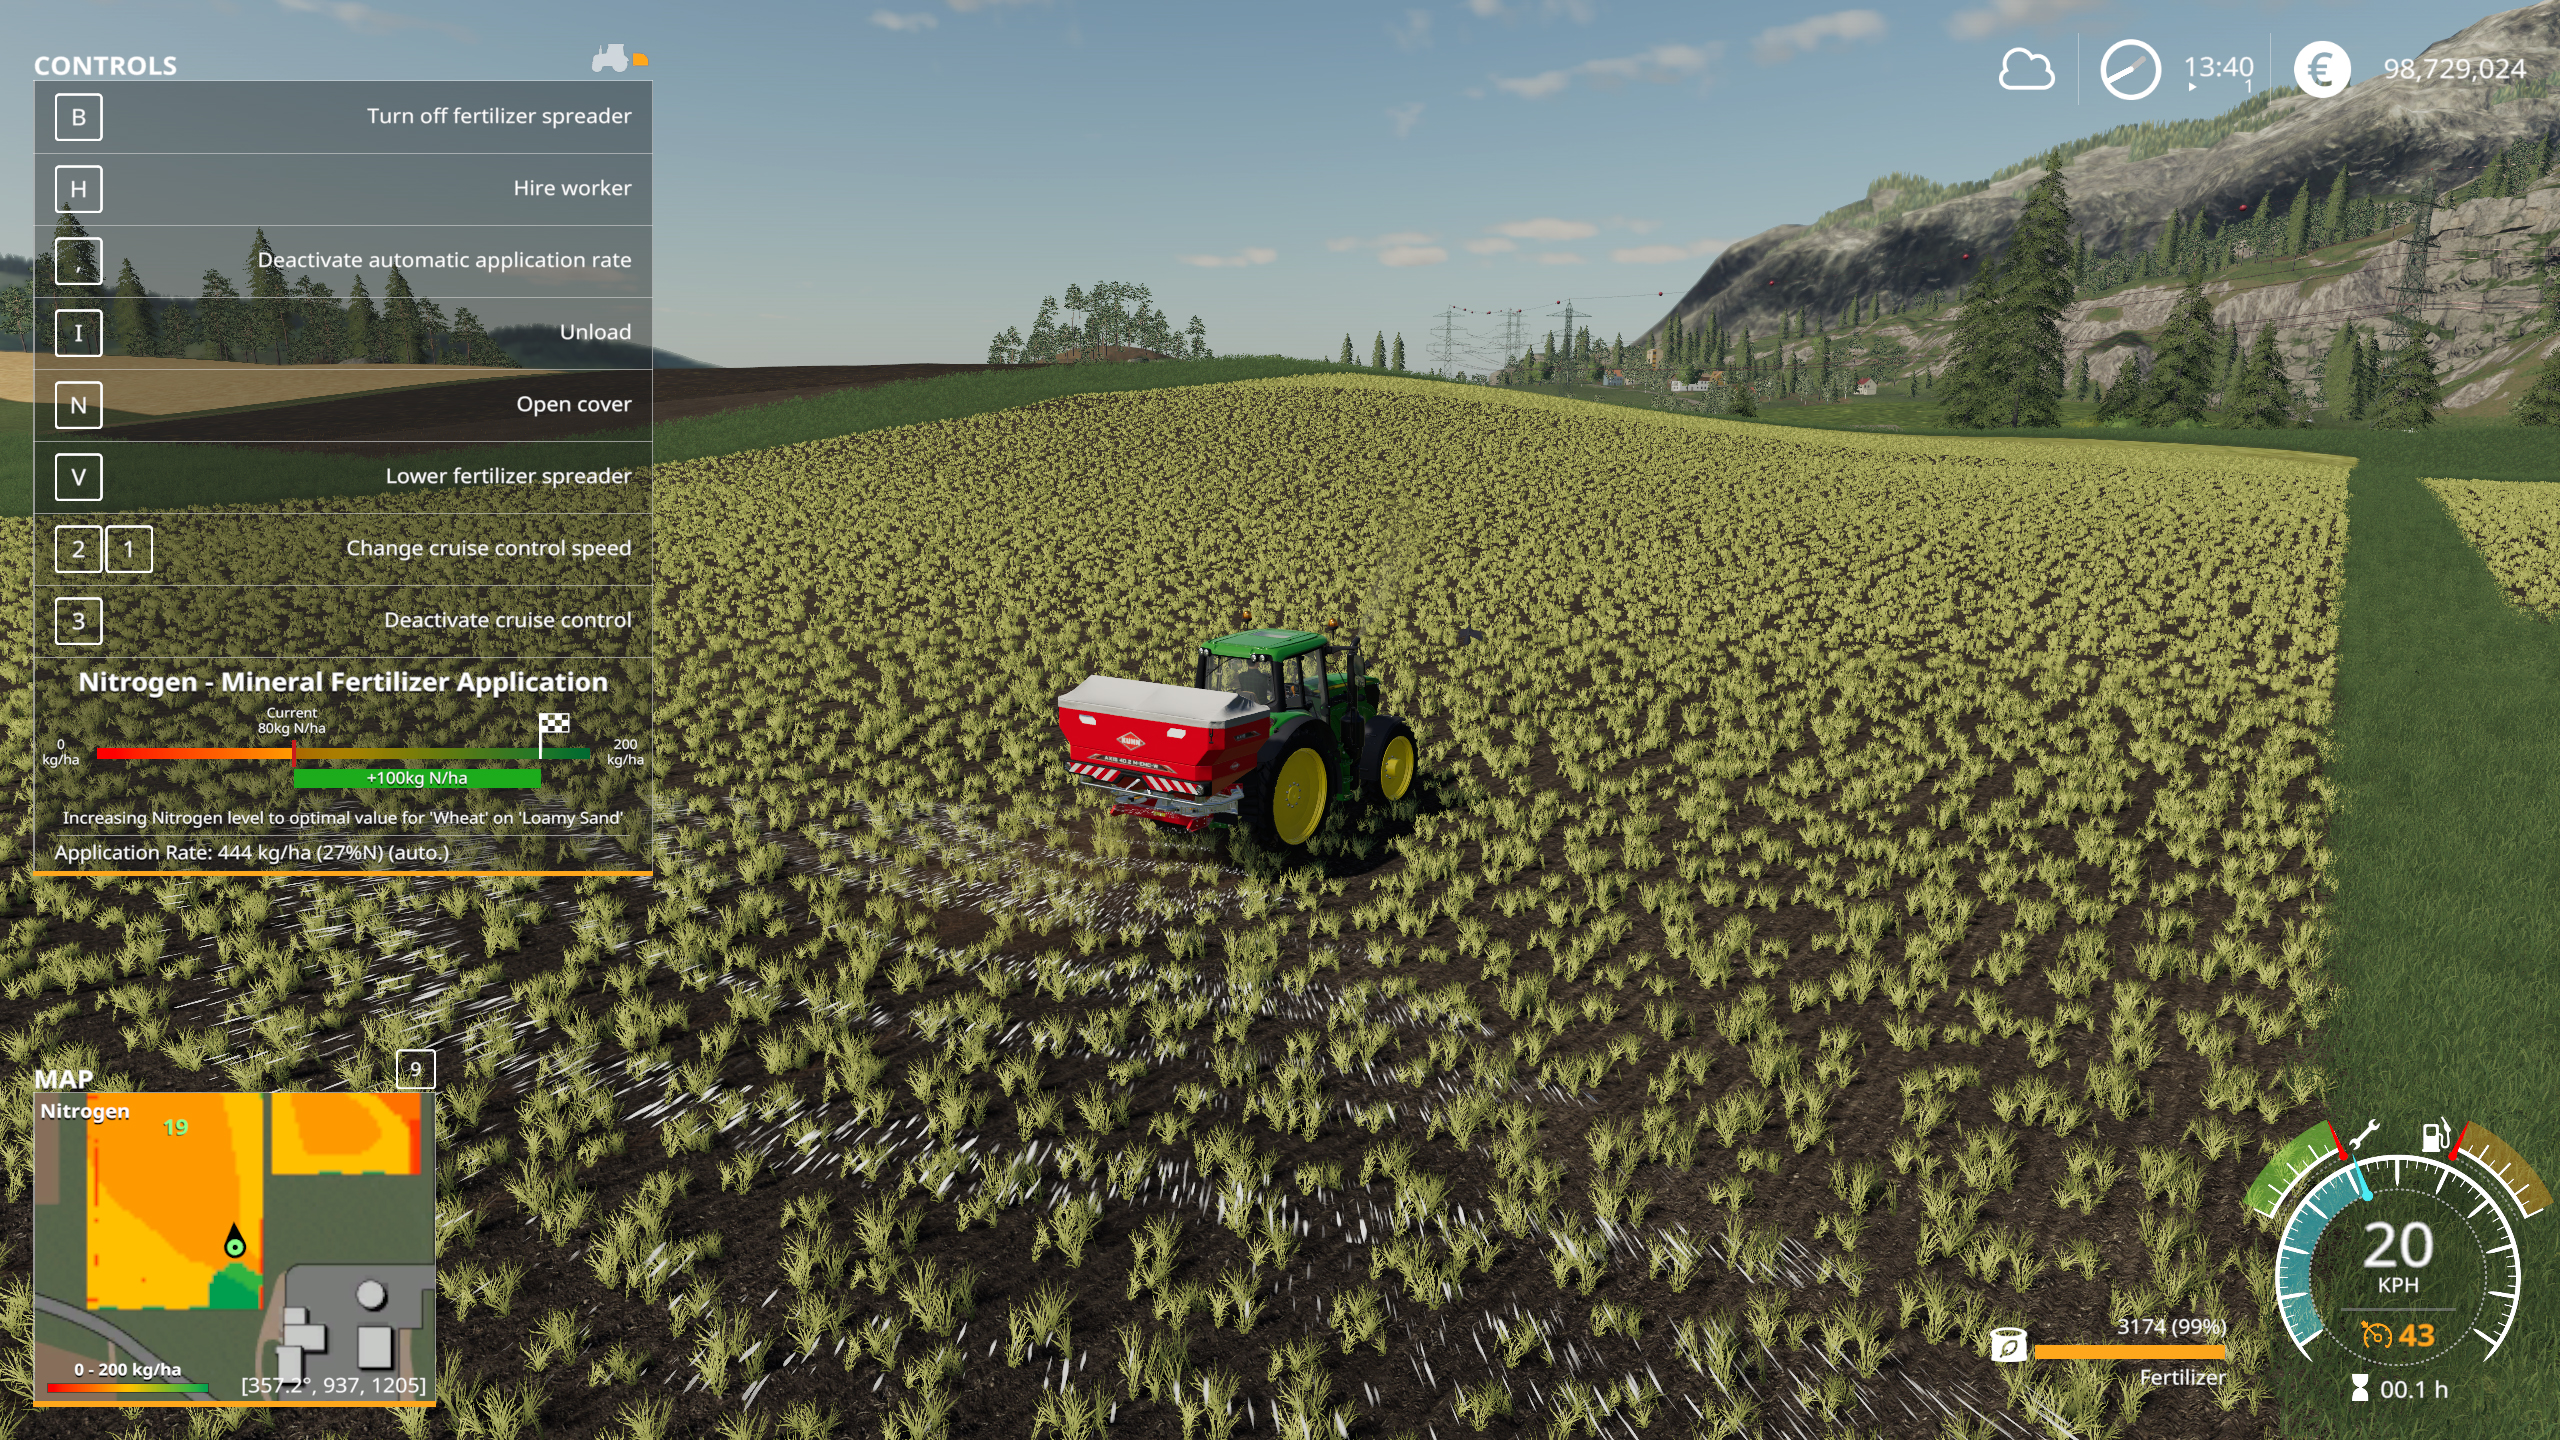 Análise: Farming Simulator 18, ou a pausa da cidade